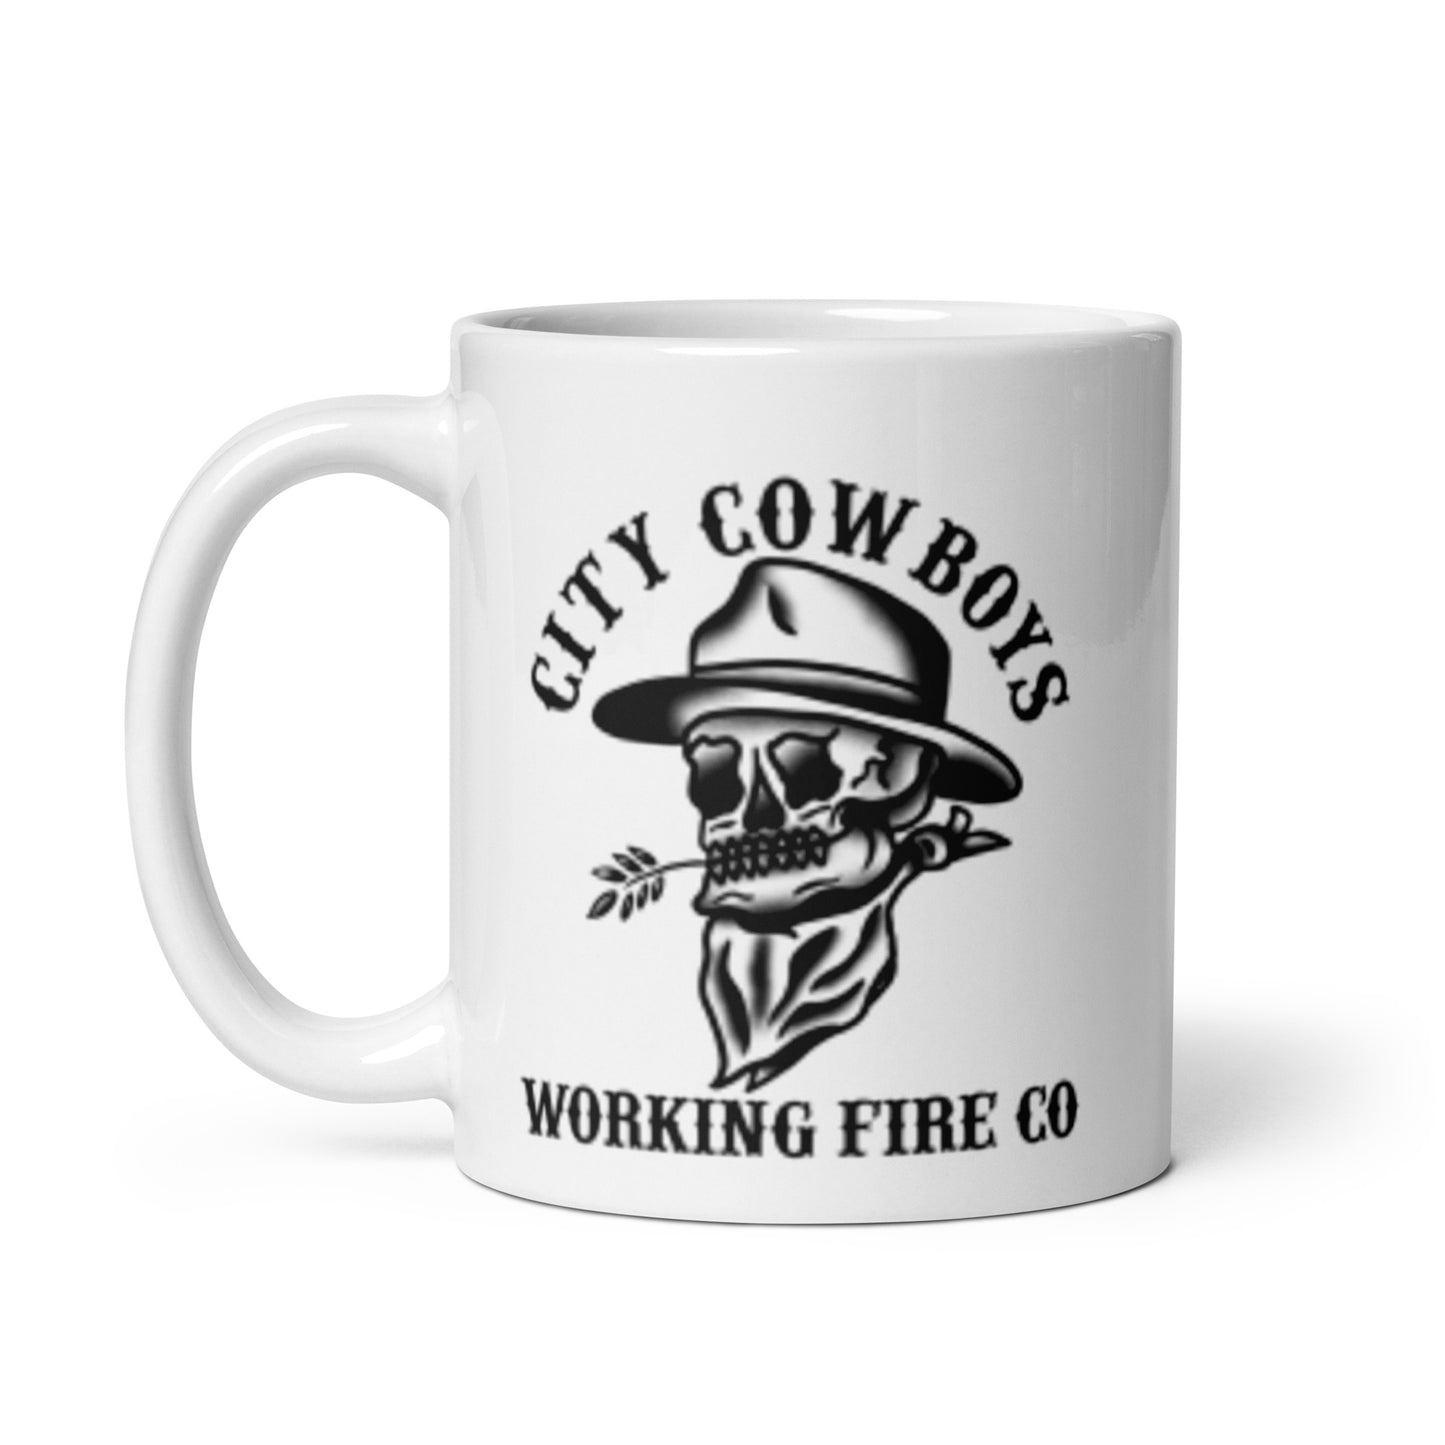 City Cowboys Mug